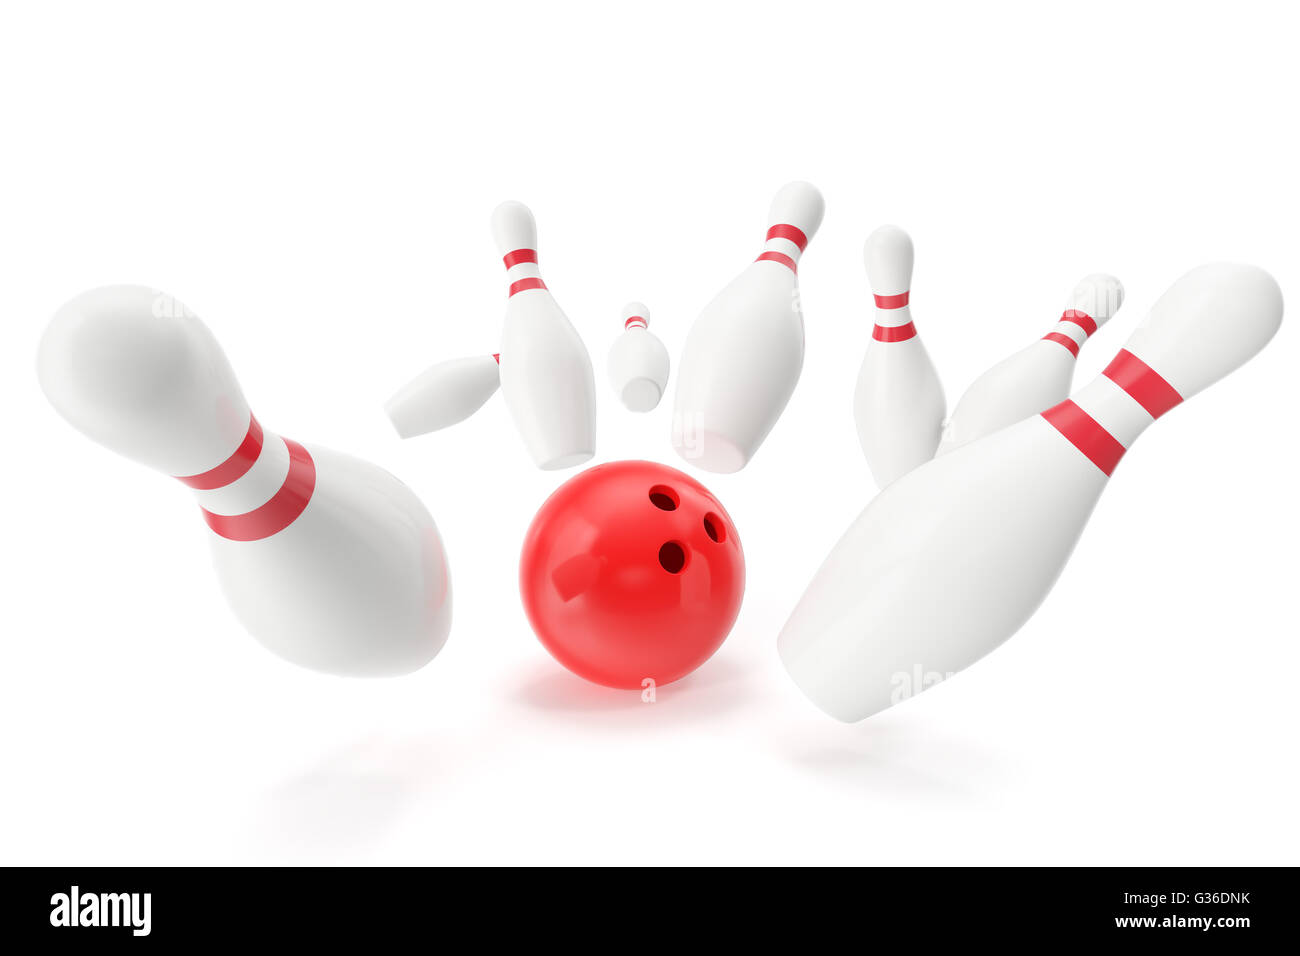 Bowling-Spiel, rote Kugel in die Kegel krachen. 3D illustration Stockfoto